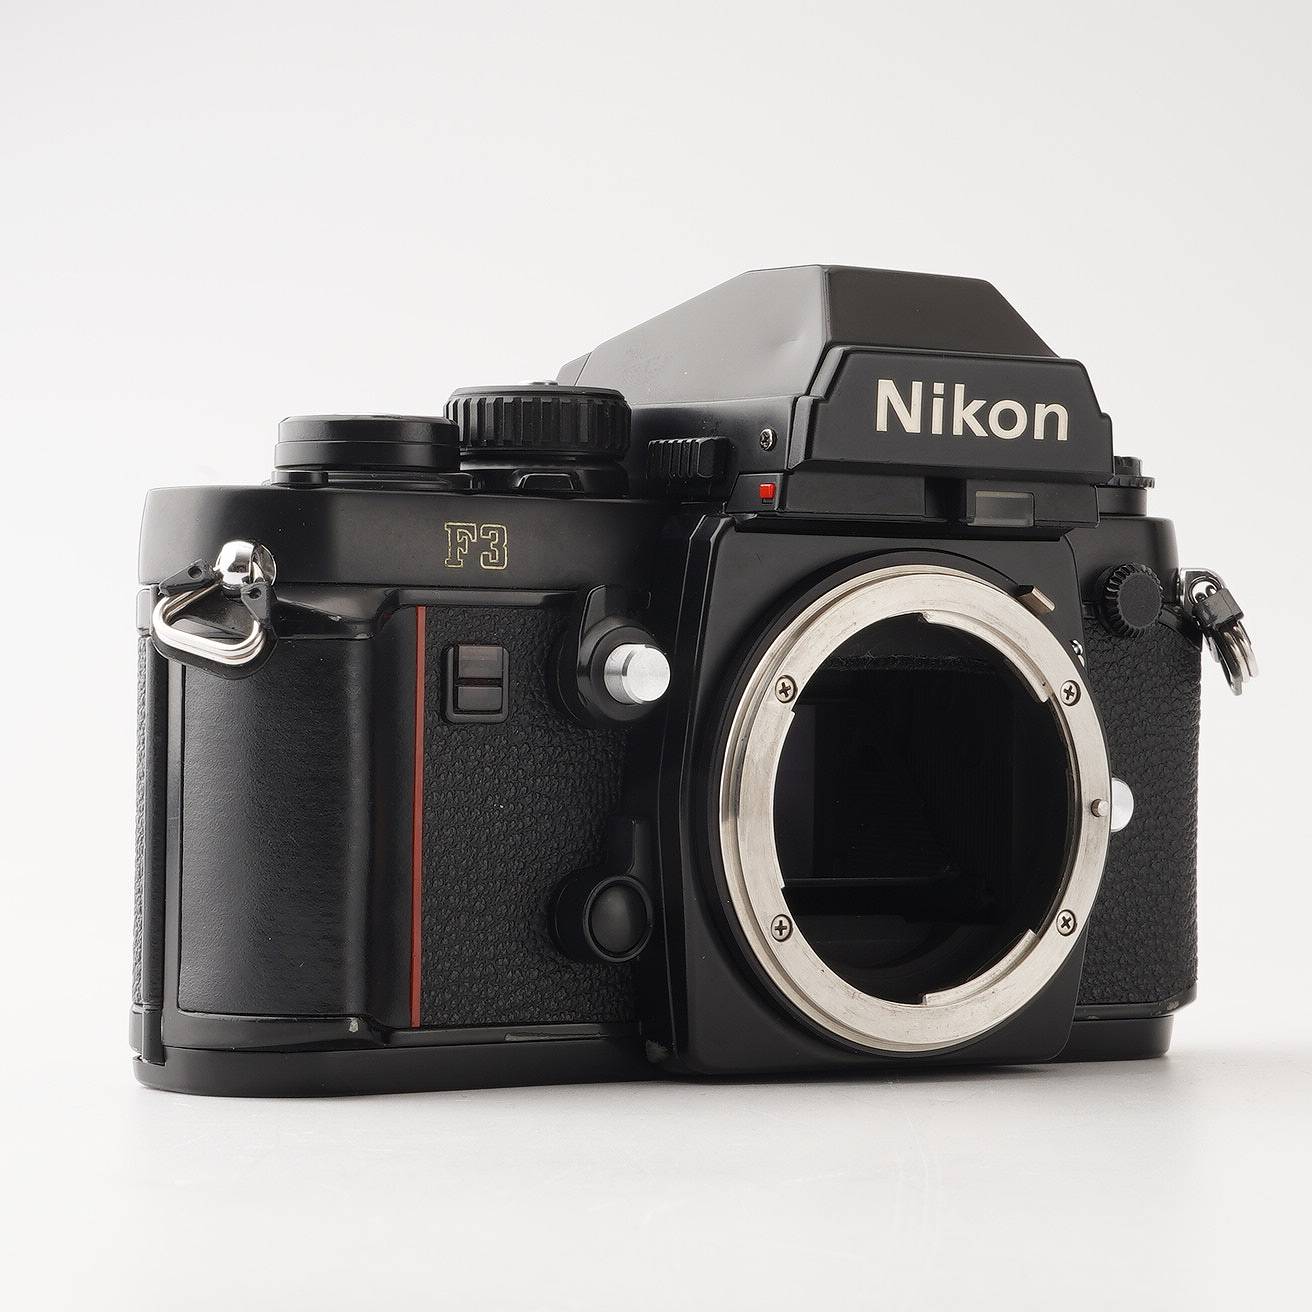 【ジャンク品】NIKON F3 フィルムカメラ 35mm